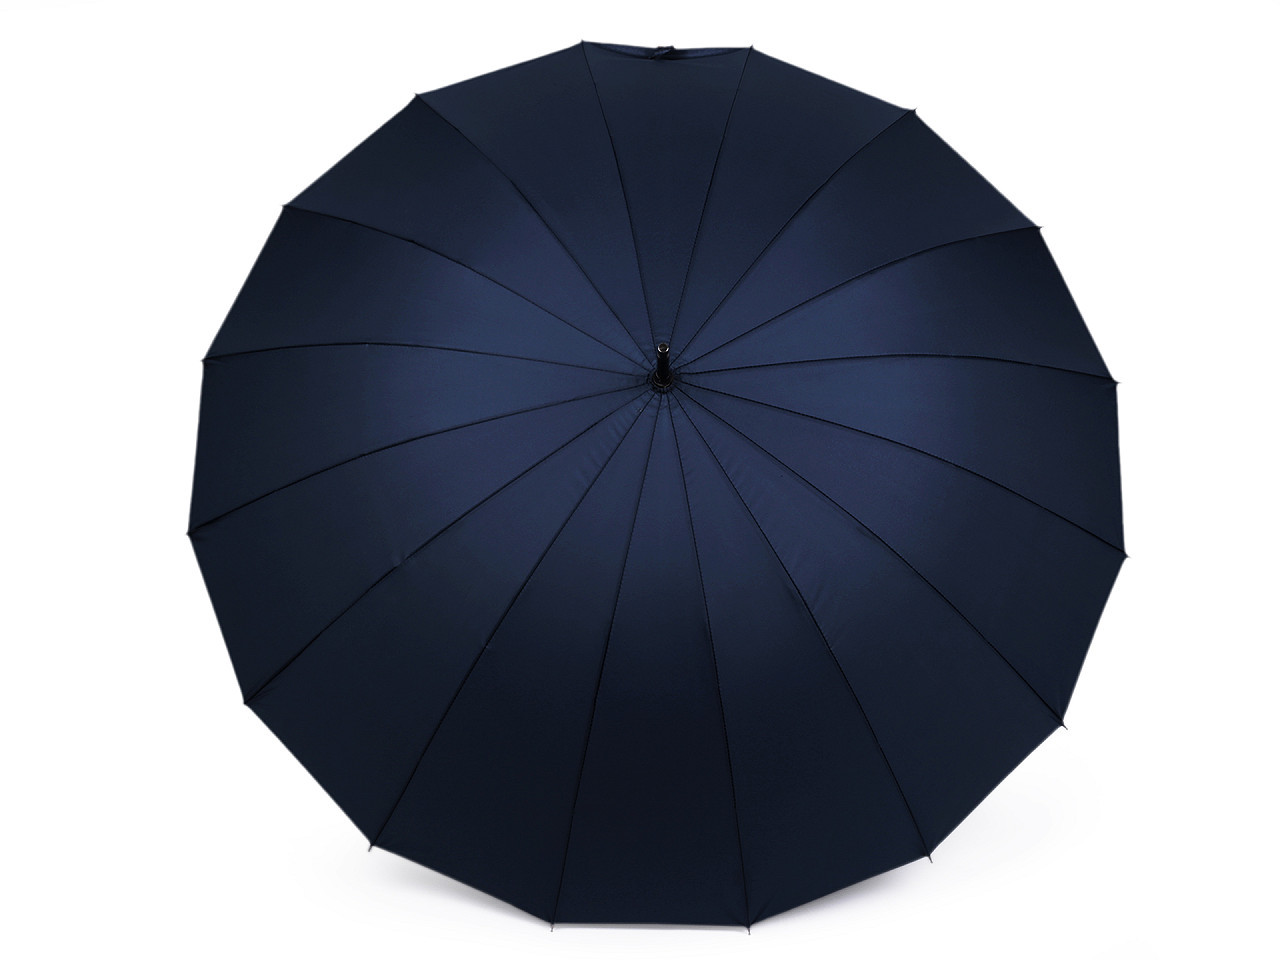 Velký rodinný deštník s dřevěnou rukojetí, barva 5 modrá tmavá